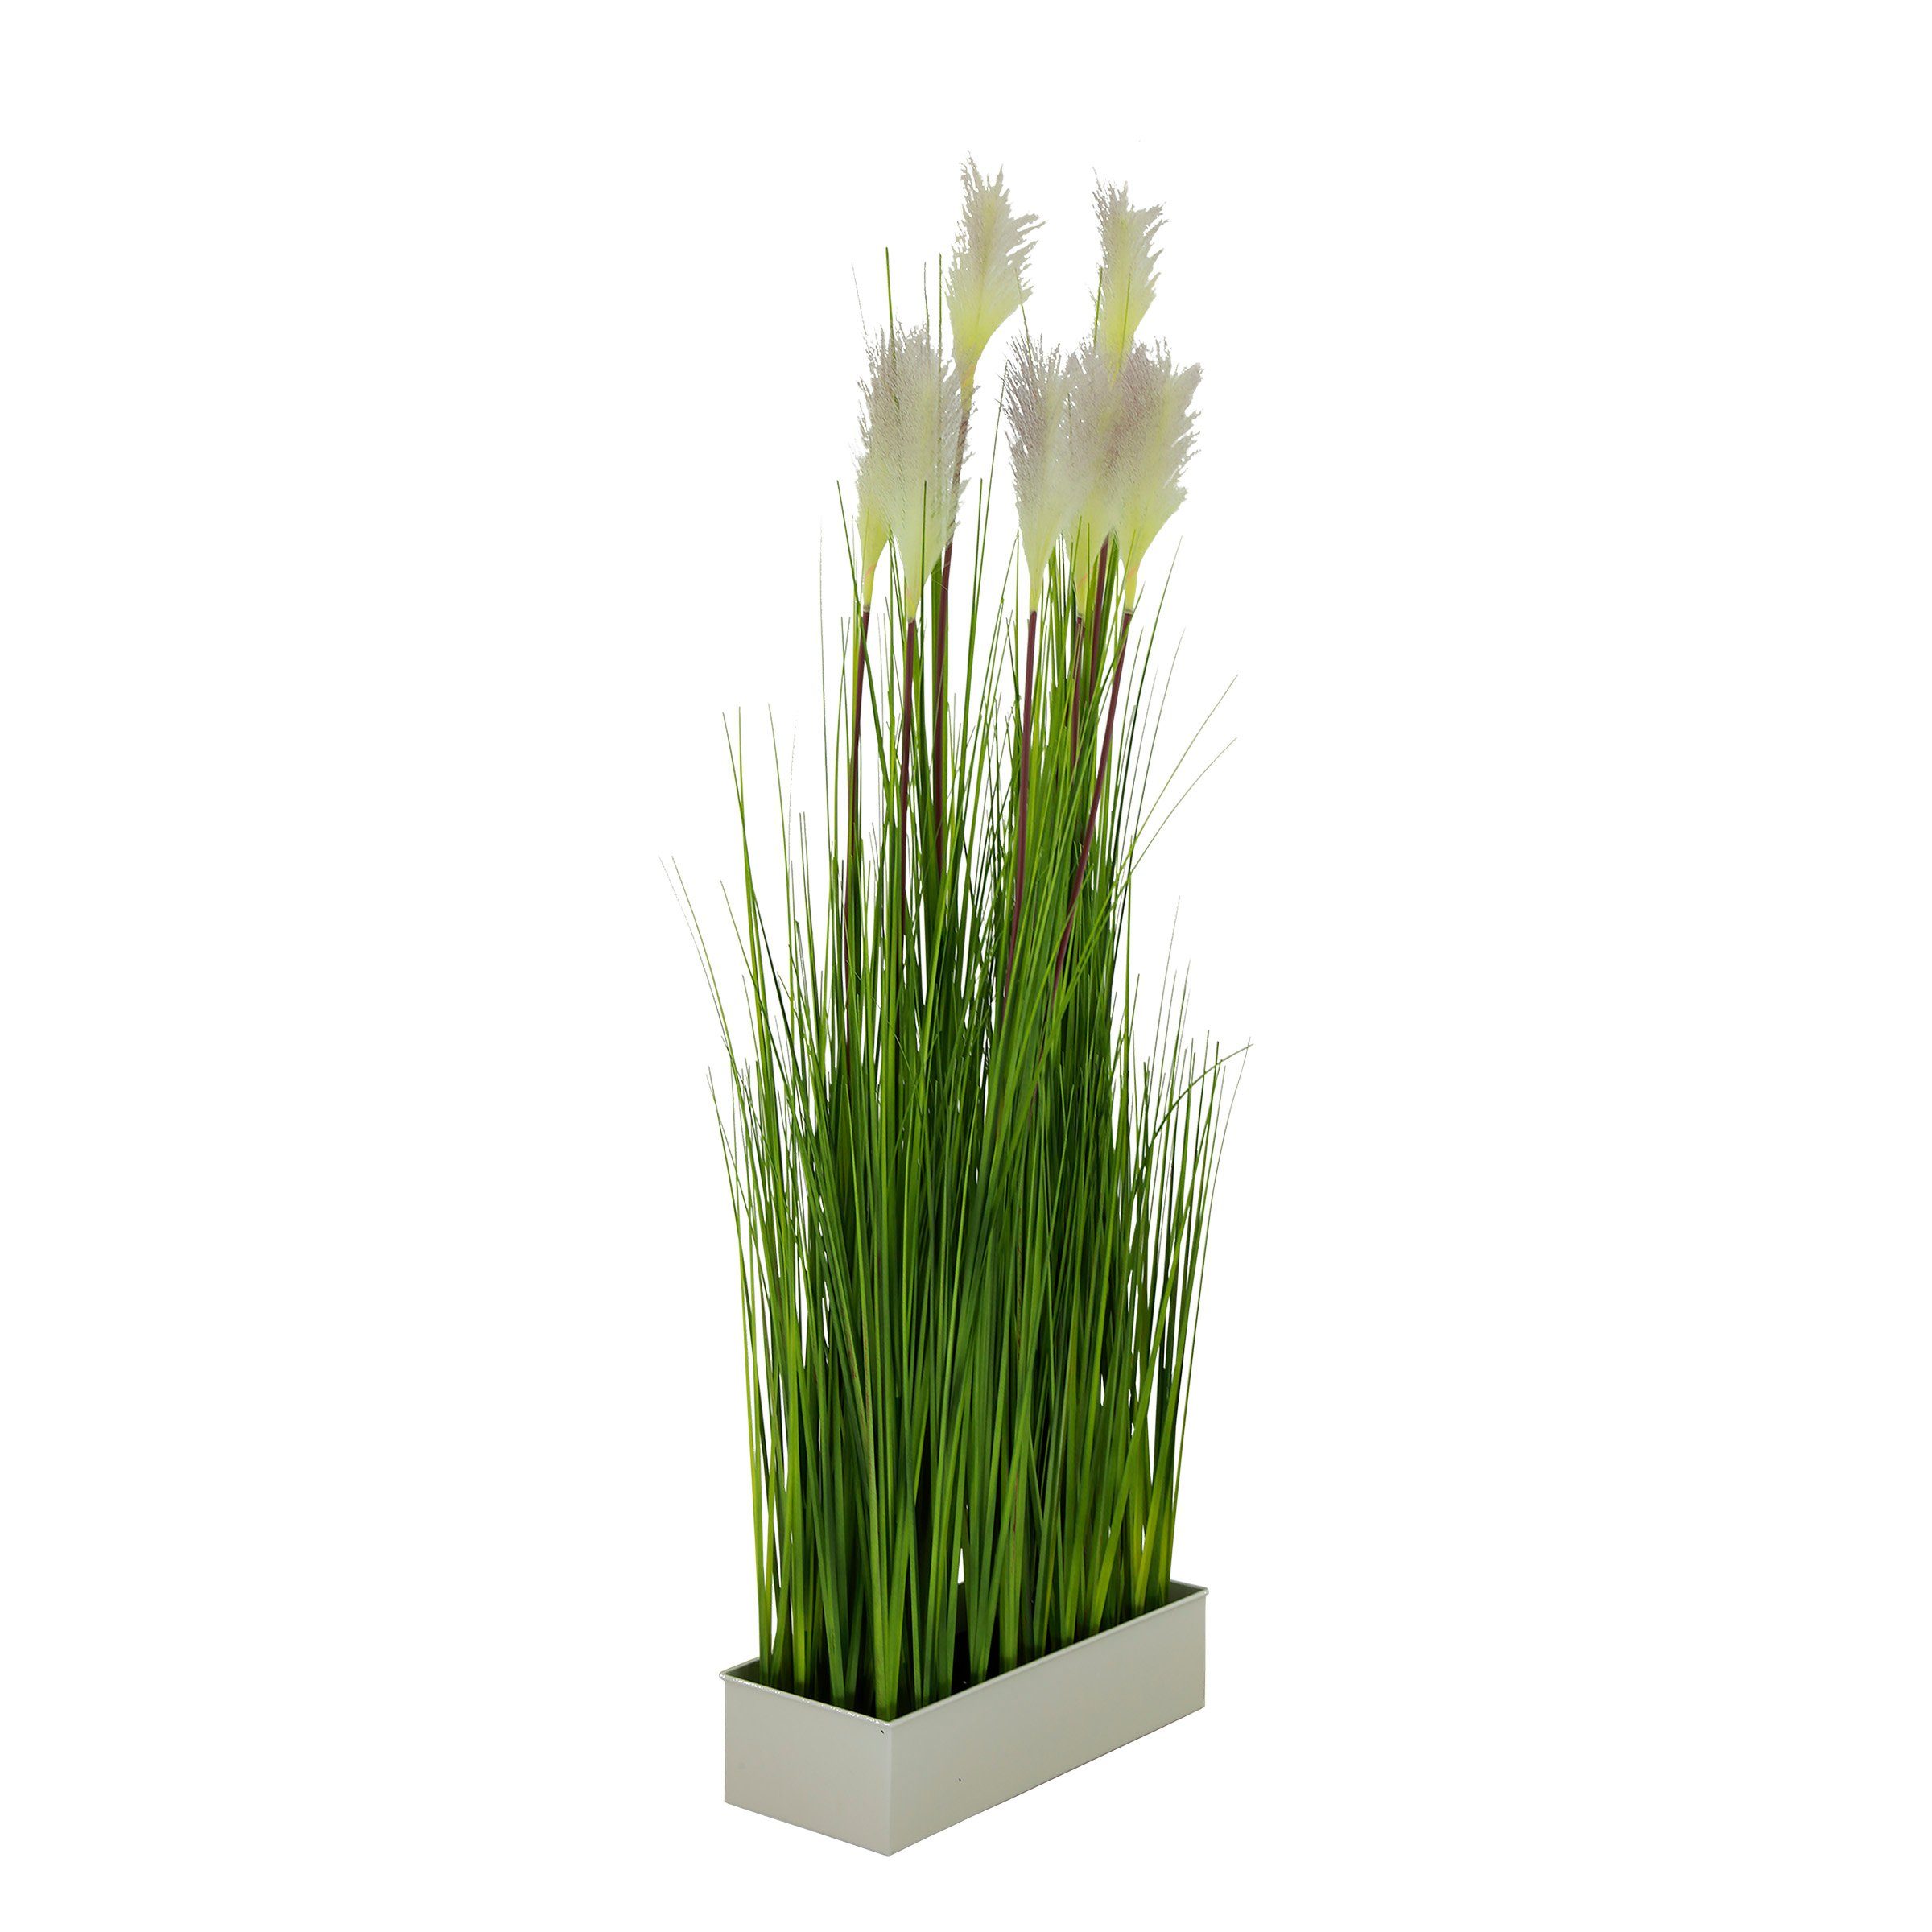 Gräser, Raumteiler Pampasgras Kunstpflanze cm ca.150 Höhe Sichtschutz AVANTEX, Raumtrenner Kunstbambus Gräser